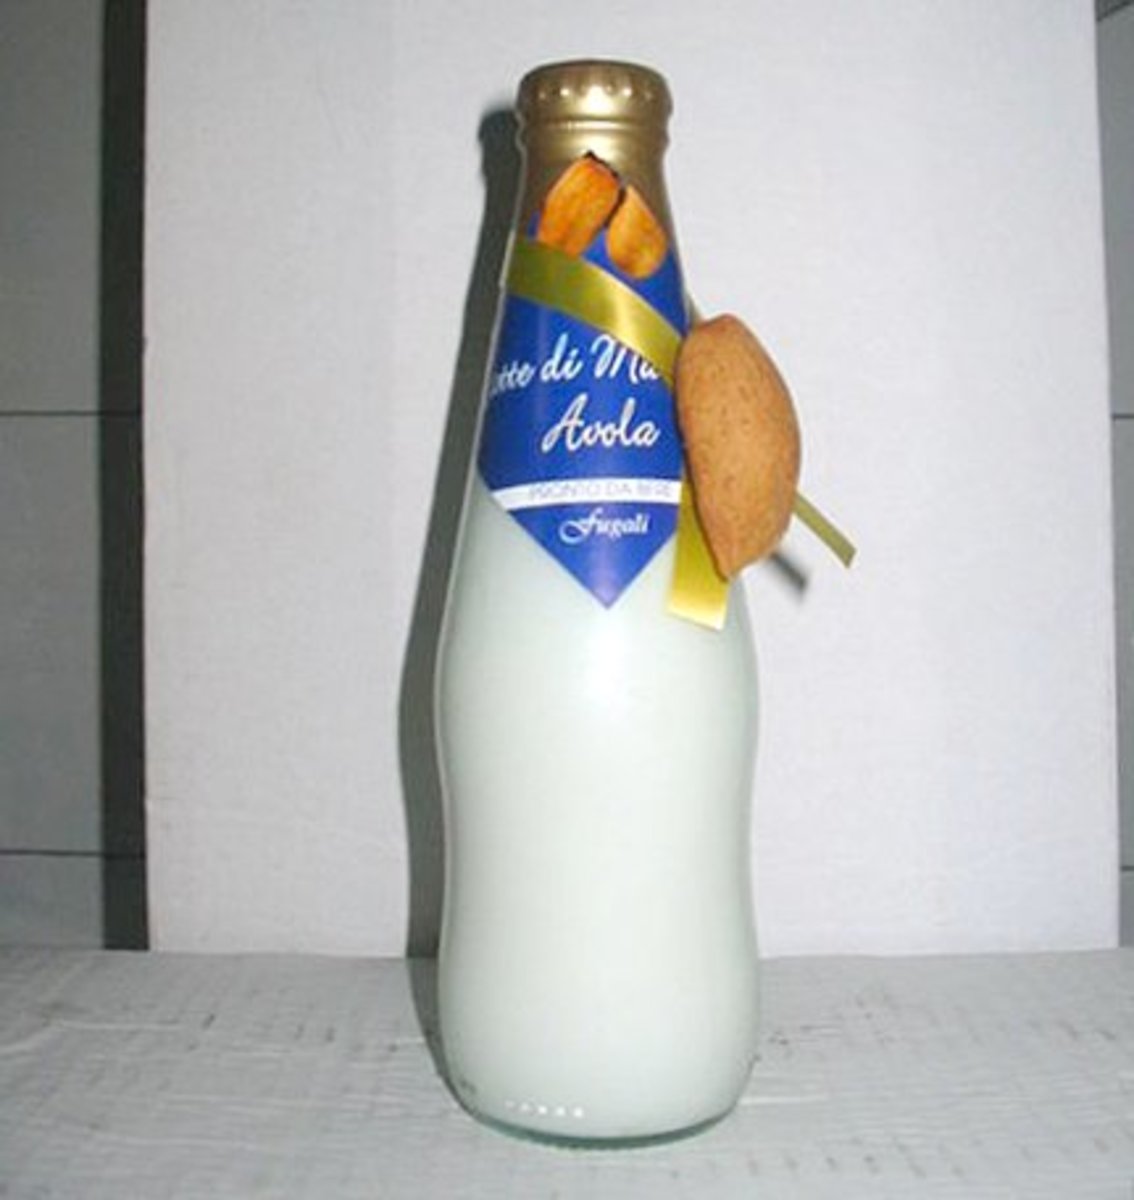 A bottle of almond milk